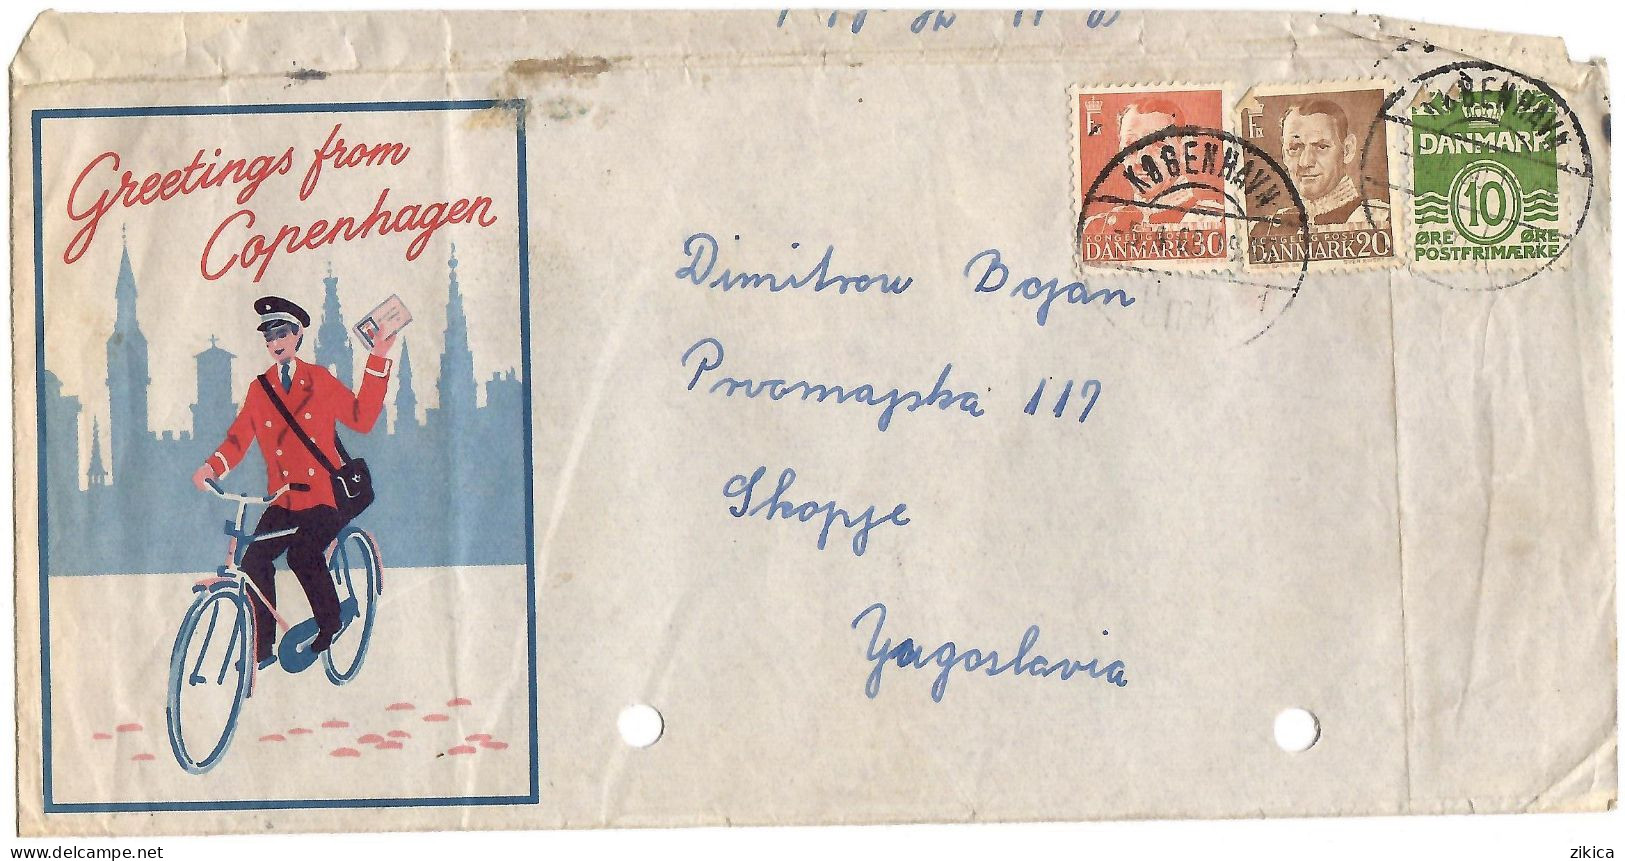 Denmark  Cover ,,Greetings From Copenhagen",letter 1960 Via Yugoslavia - Covers & Documents